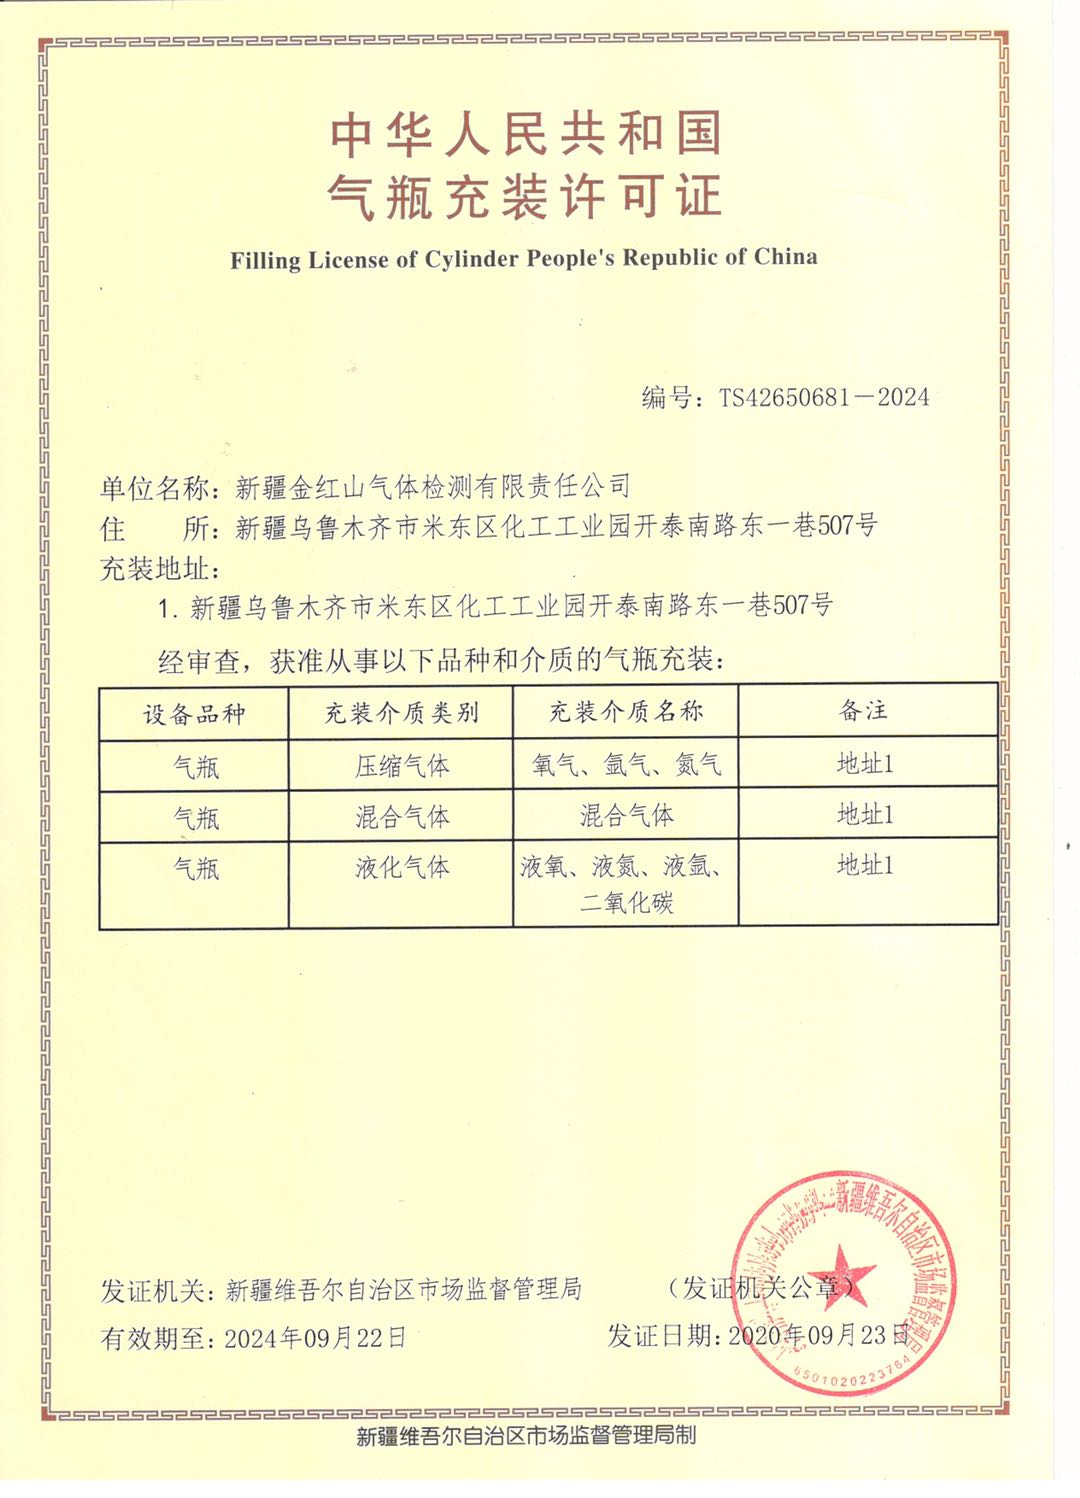 中華人民共和國氣瓶充裝許可證